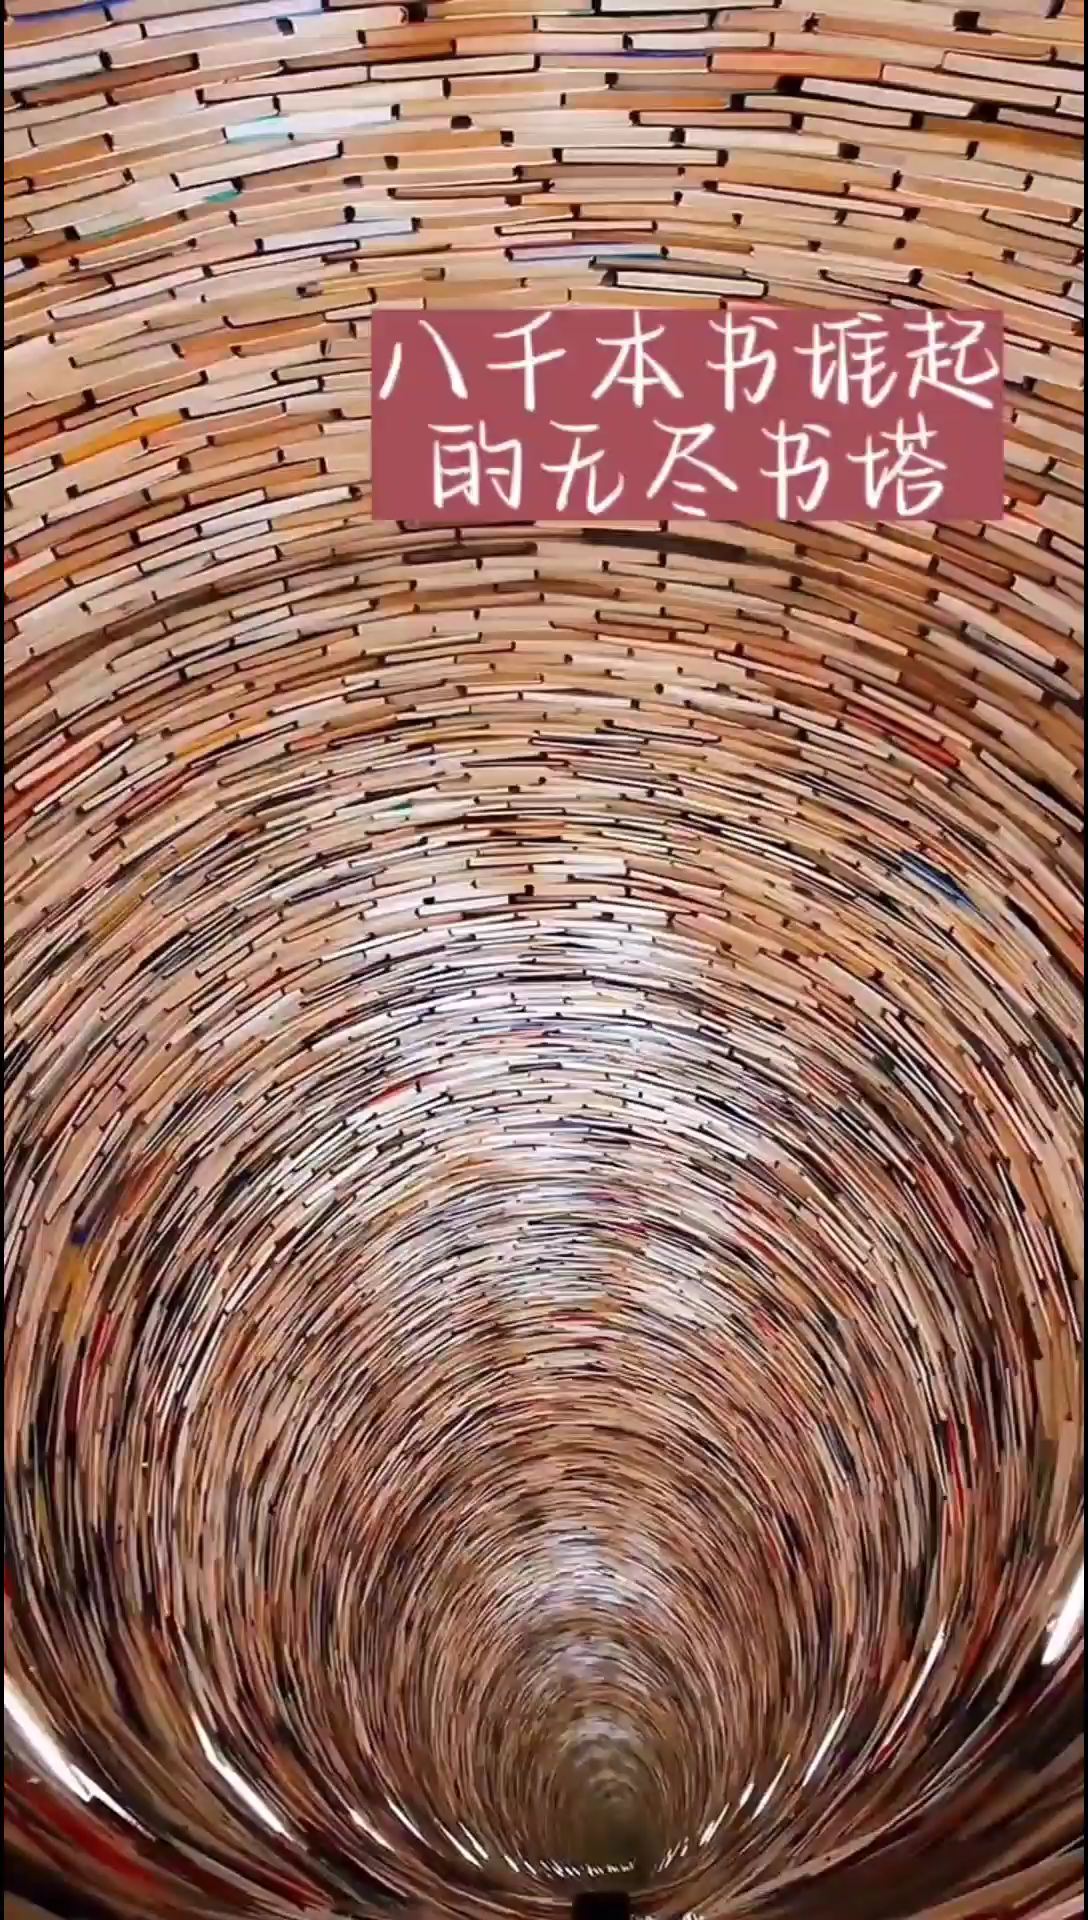 八千本书堆起的无尽书塔